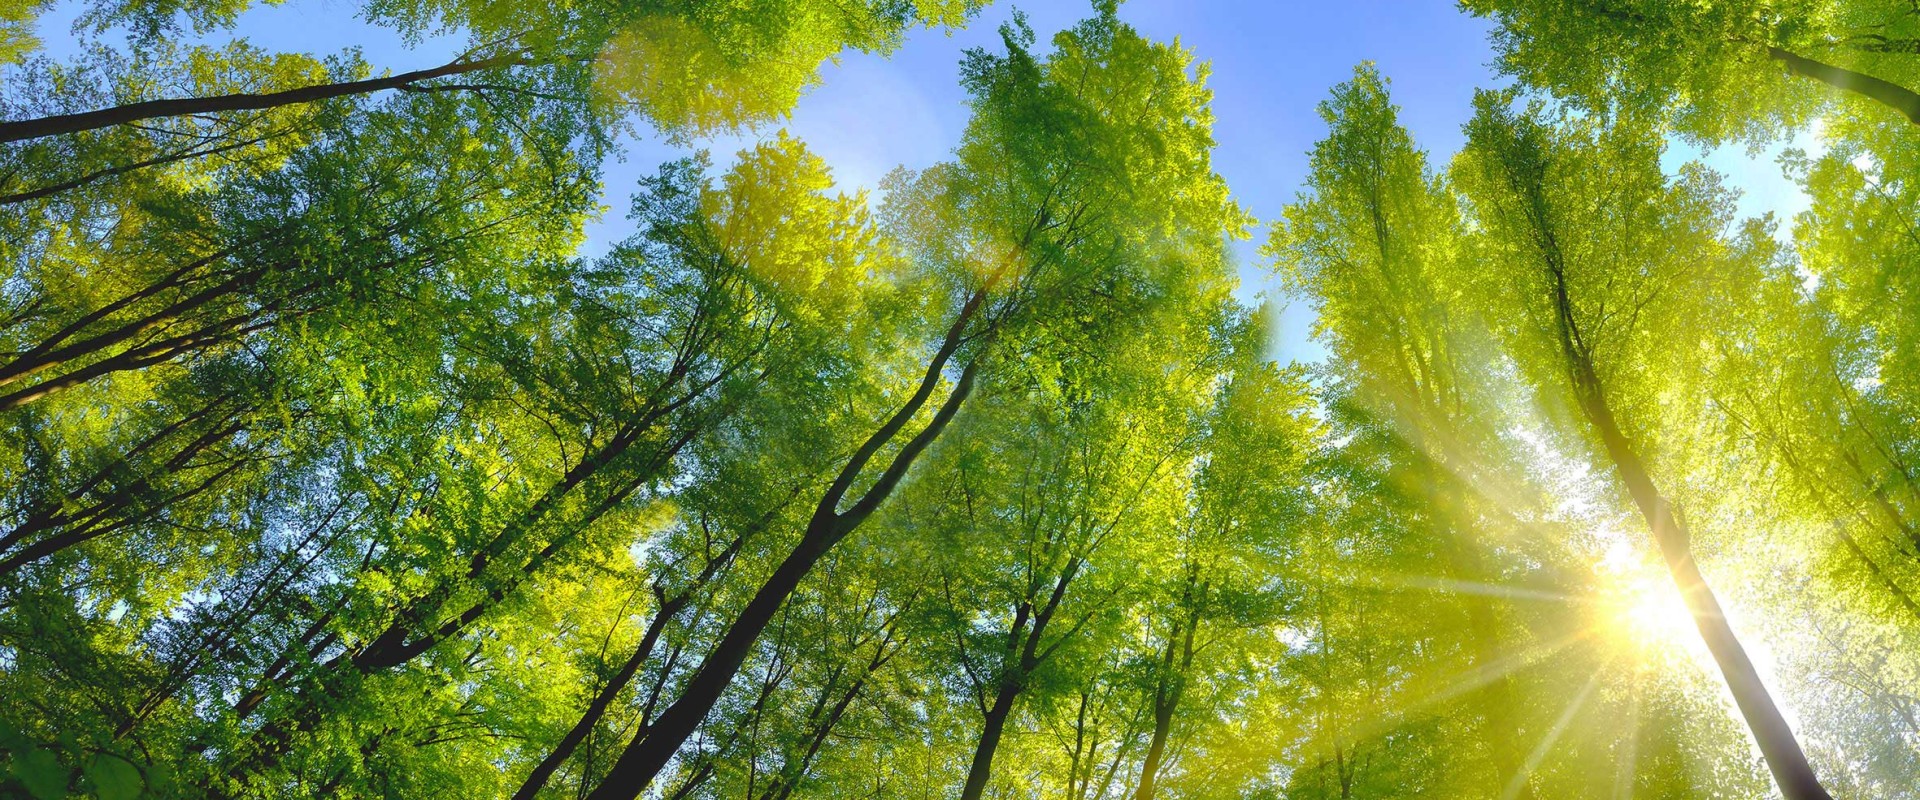  Las liściasty z zielonymi liśćmi w świetle słonecznym i niebieskie niebo